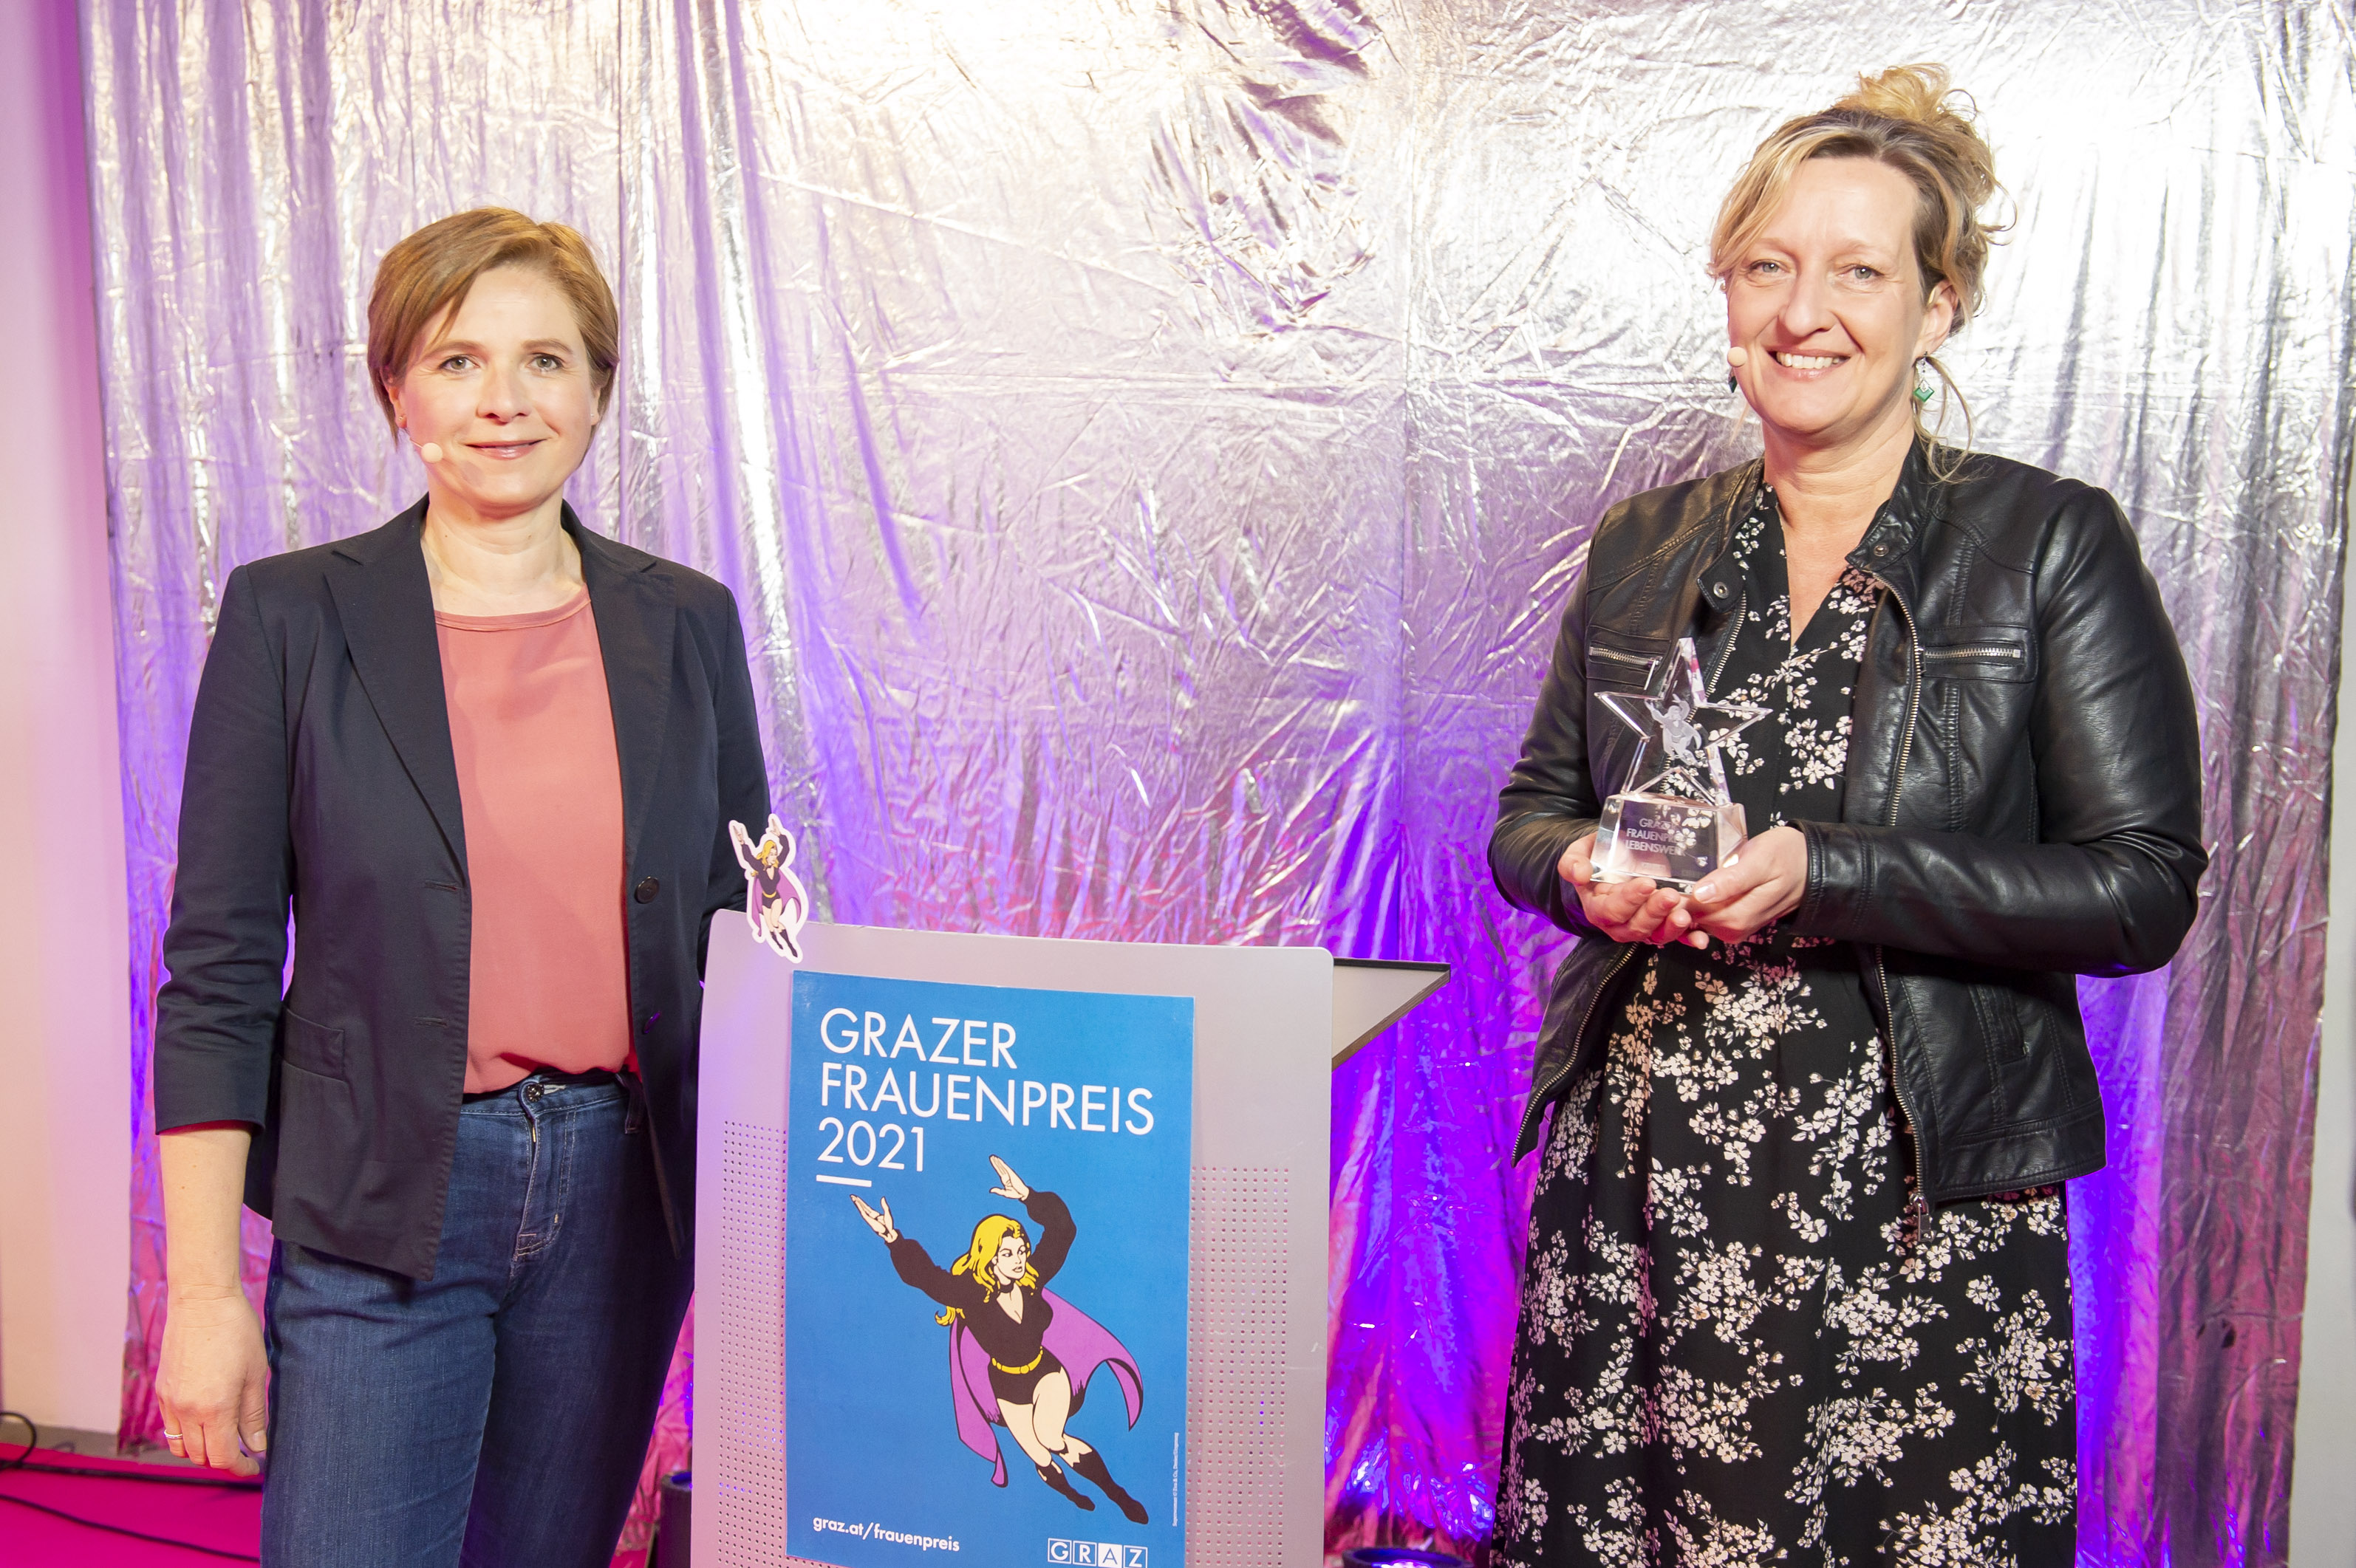 Ausgezeichnet mit dem Frauenpreis für das Lebenswerk wurde Petra Ruzsics-Hoitsch (rechts) für ihren Einsatz für Alleinerzieherinnen. Die damalige Frauenstadträtin Judith Schwentner gratulierte herzlich.